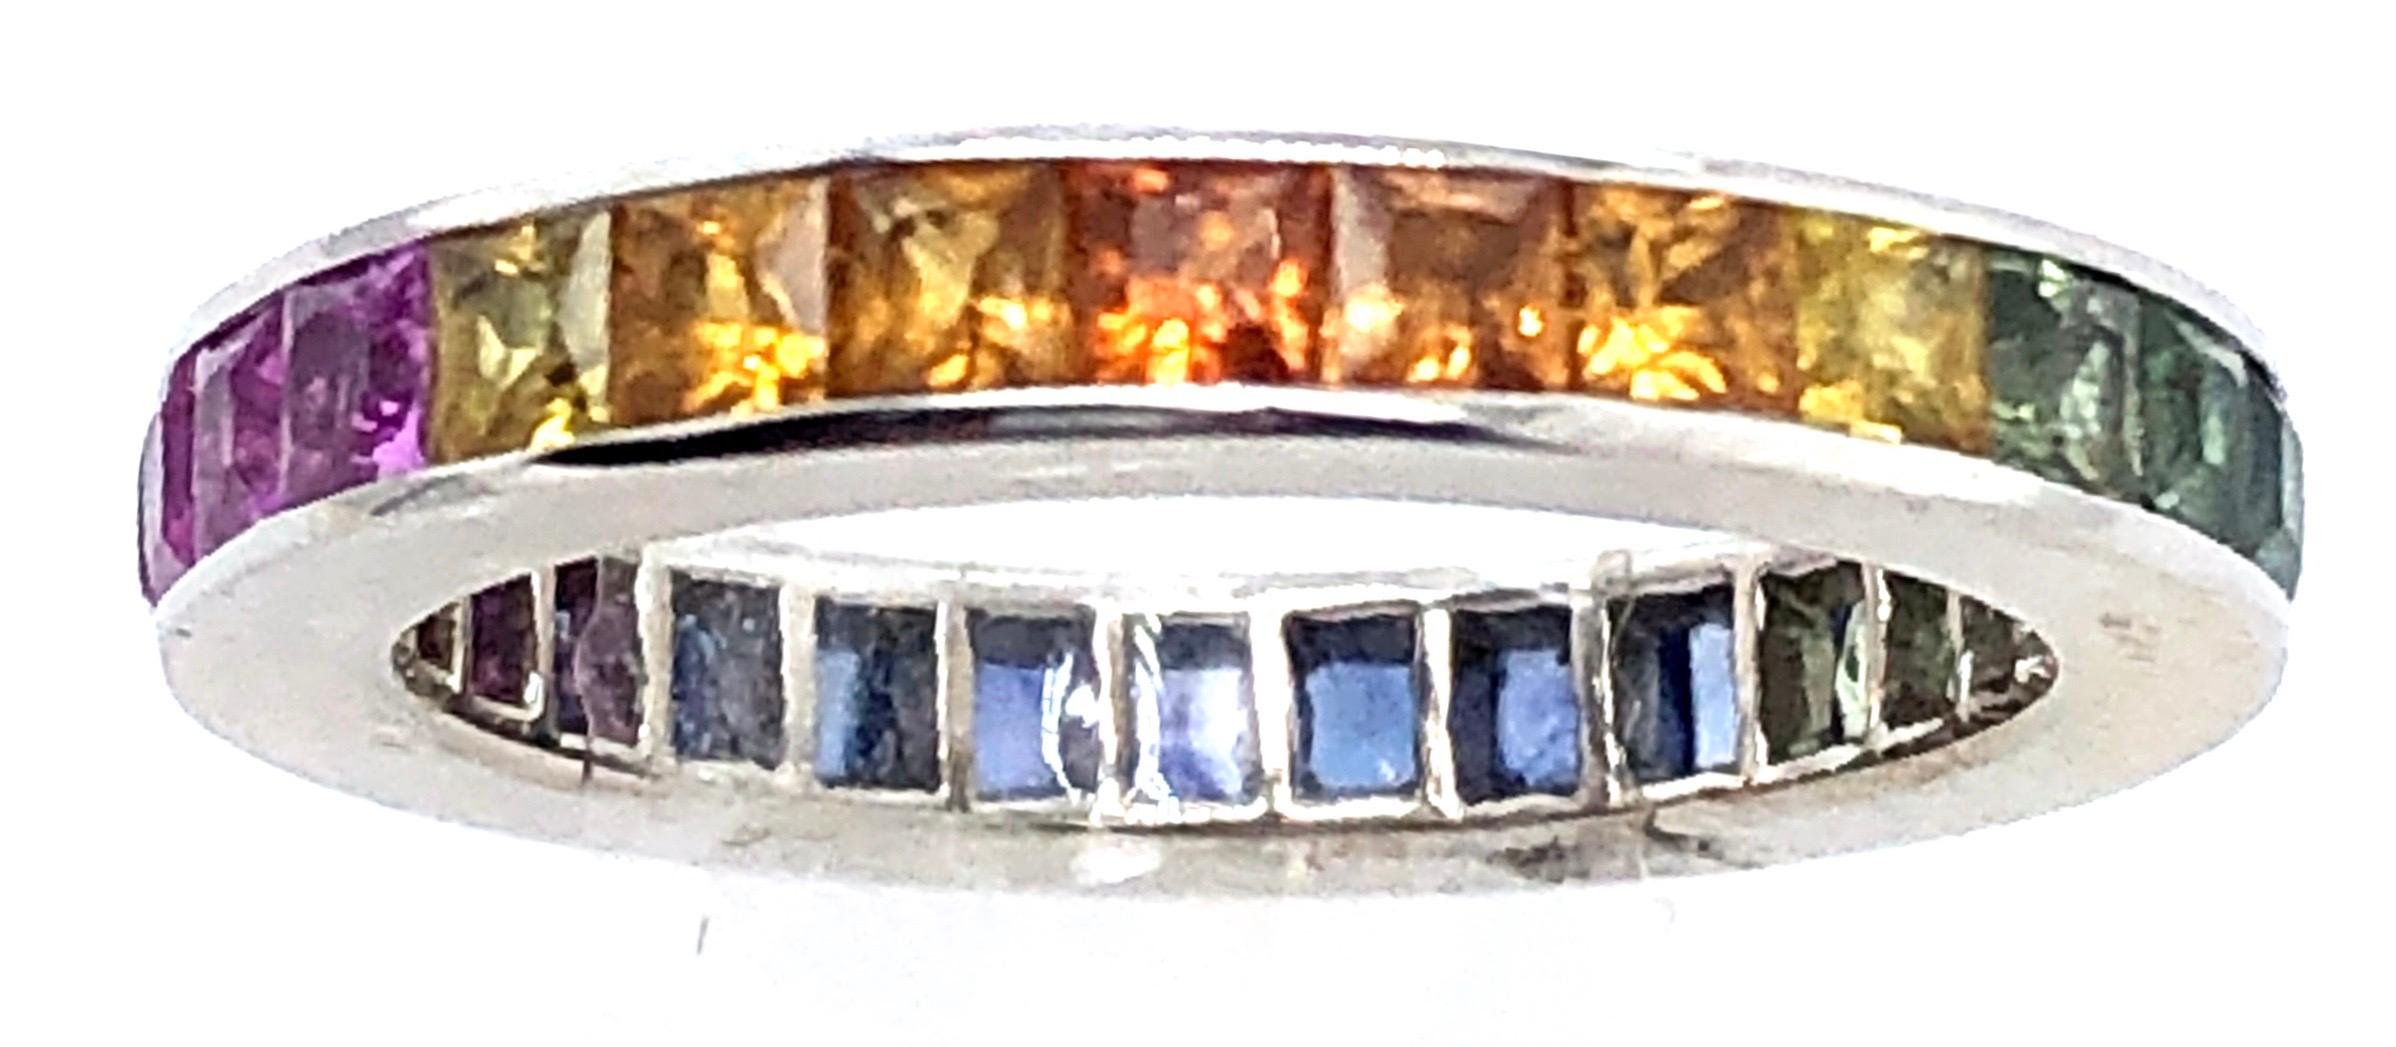 18 Karat Weißgold Eternity Band Ring mit Halbedelsteinen Größe 5.
3.23 Gramm Gesamtgewicht.
